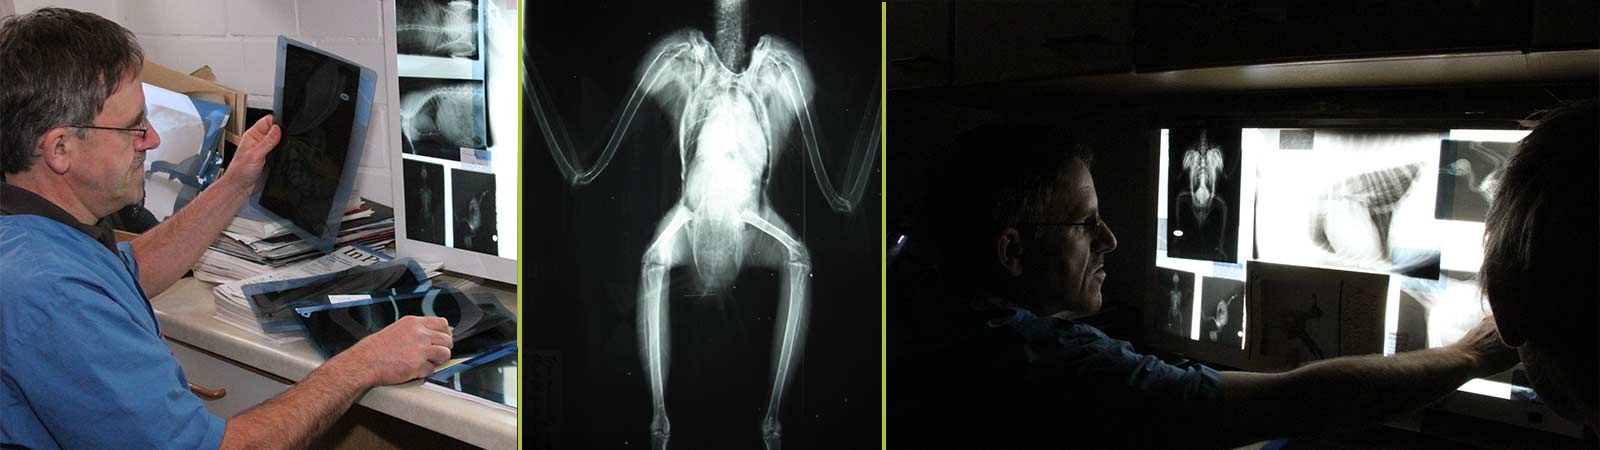 Tiere röntgen, Röntgenuntersuchung für Tiere